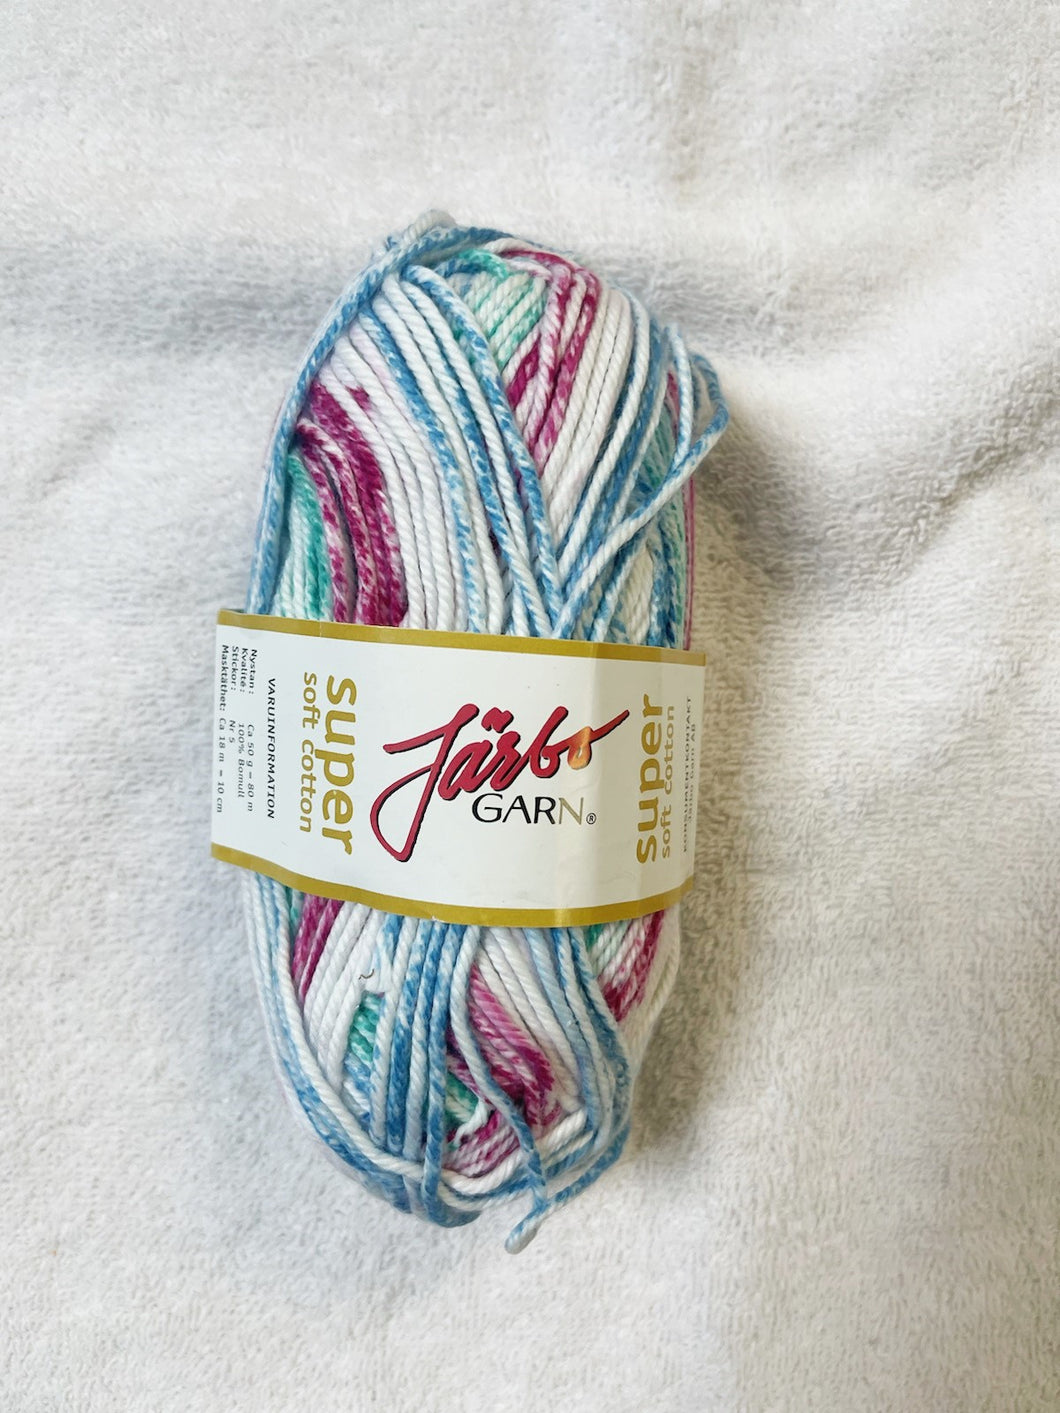 Super Soft Cotton from Jarbo Garn